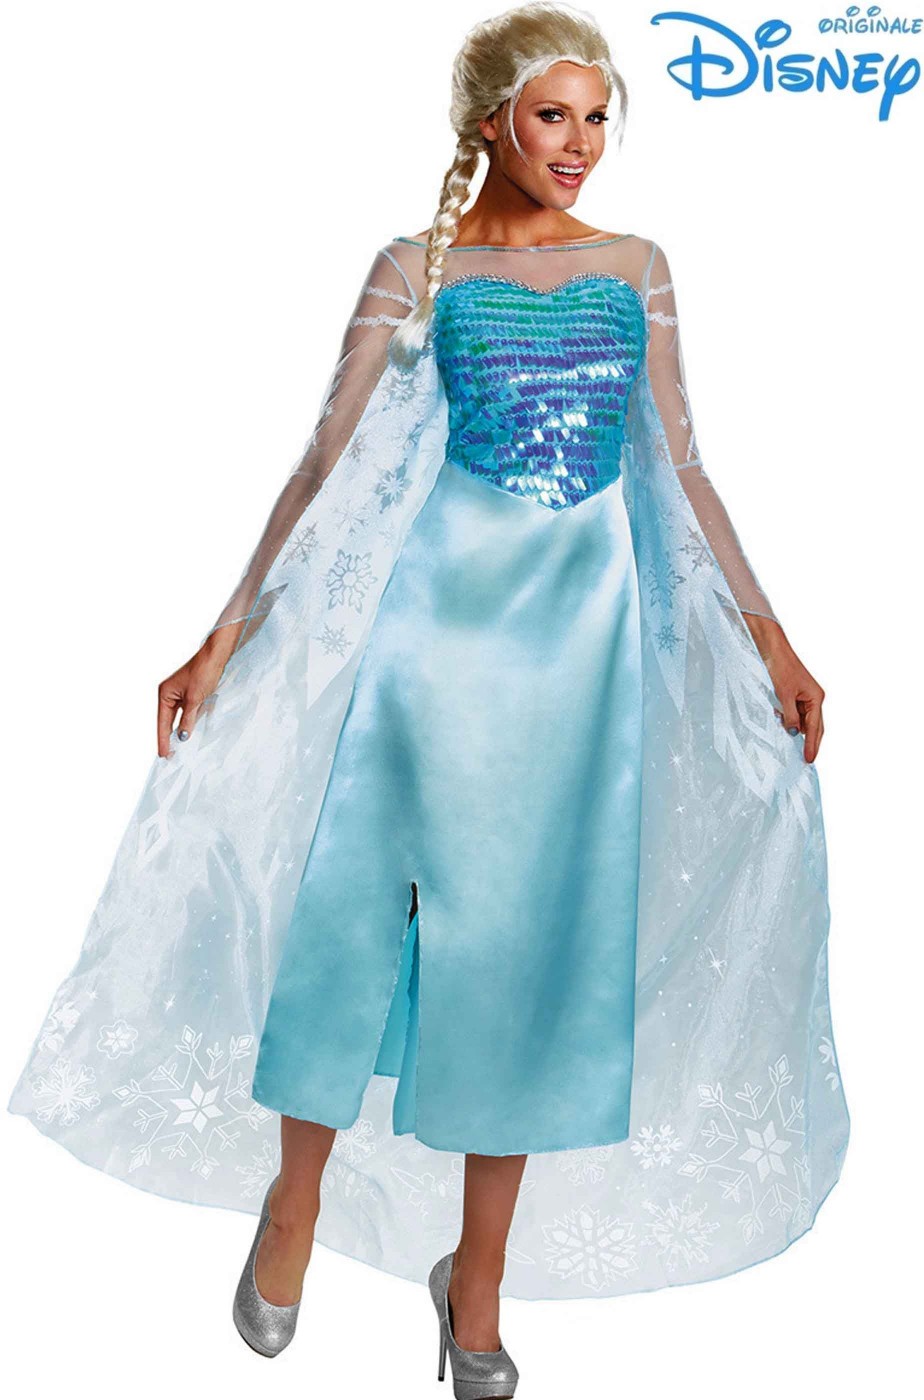 Costume Elsa di Frozen adulta originale Disney